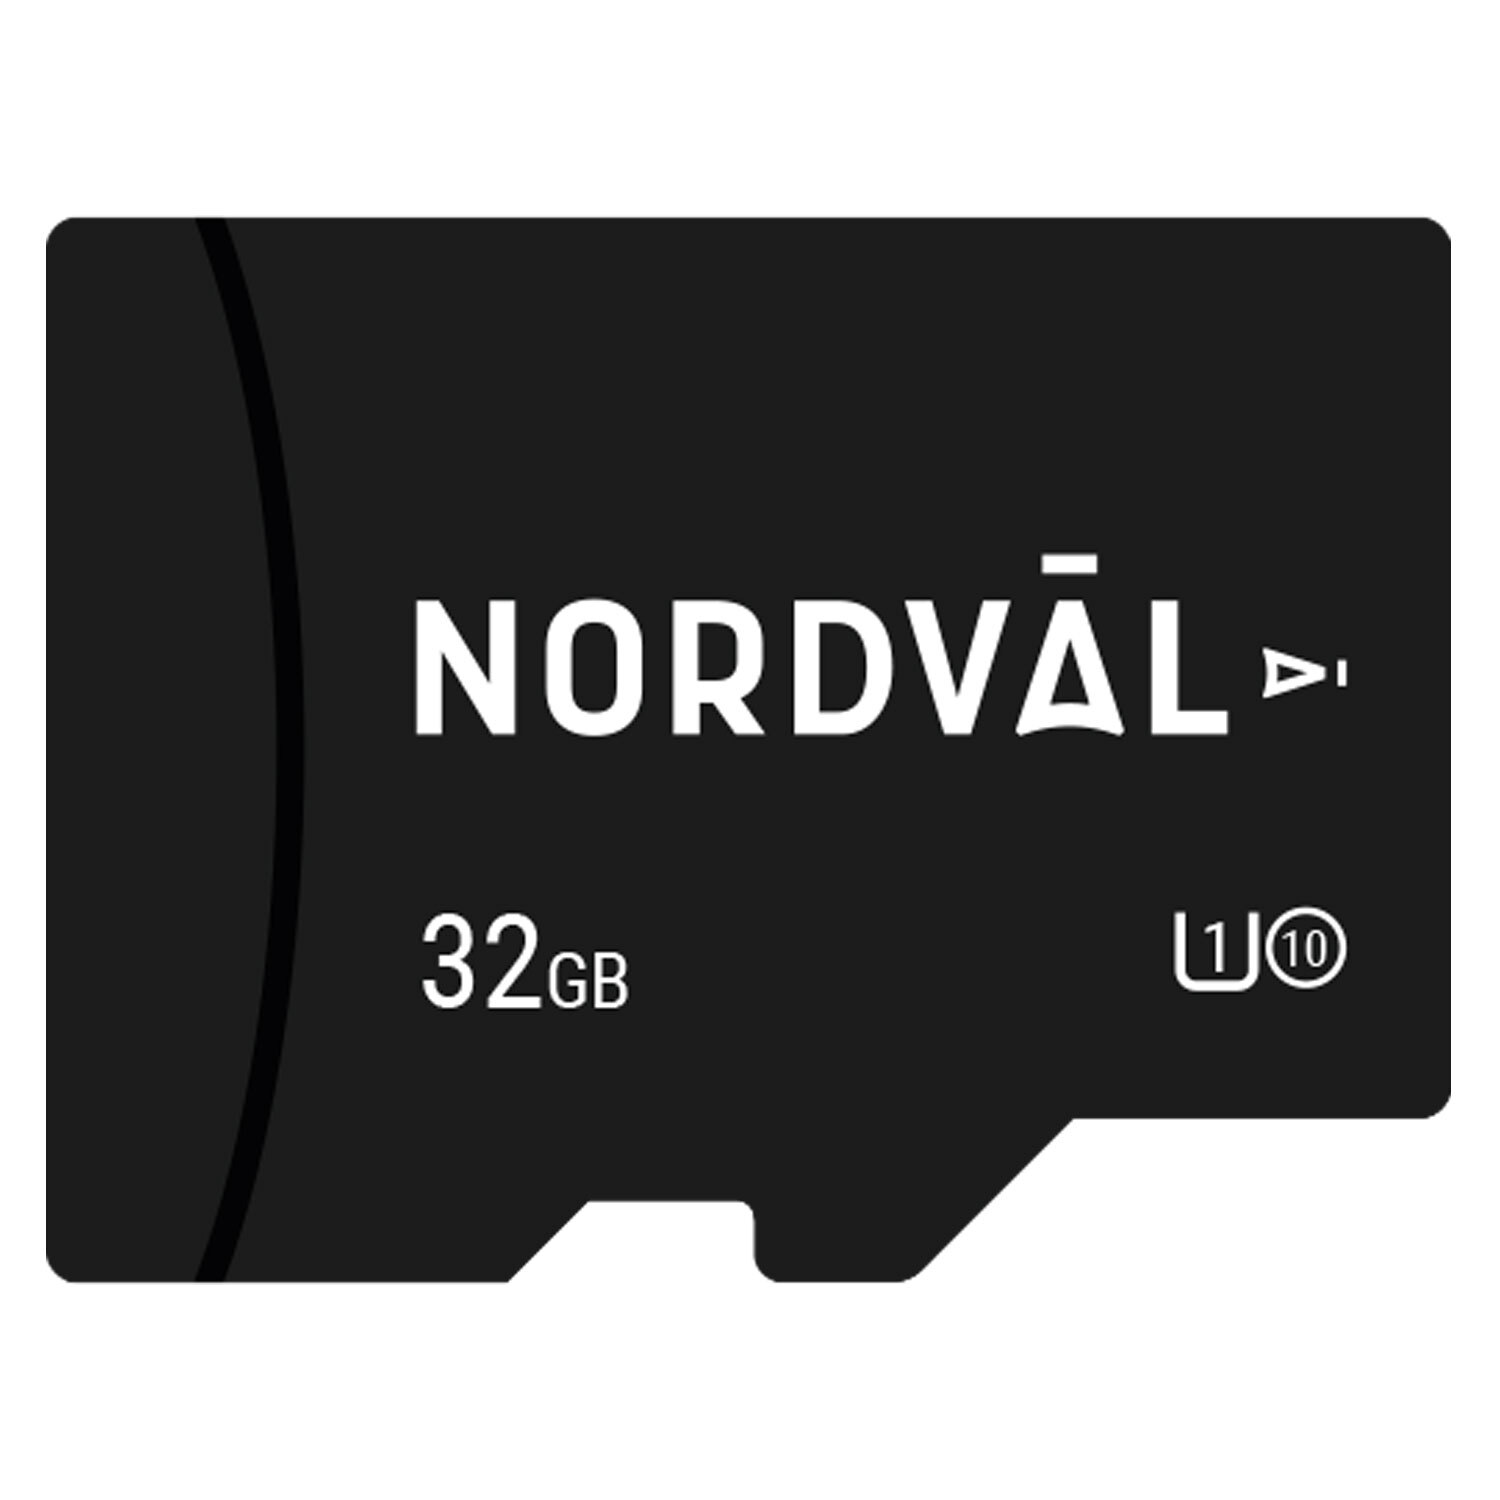 Nordväl Nordväl MSD geheugenkaart 32GB